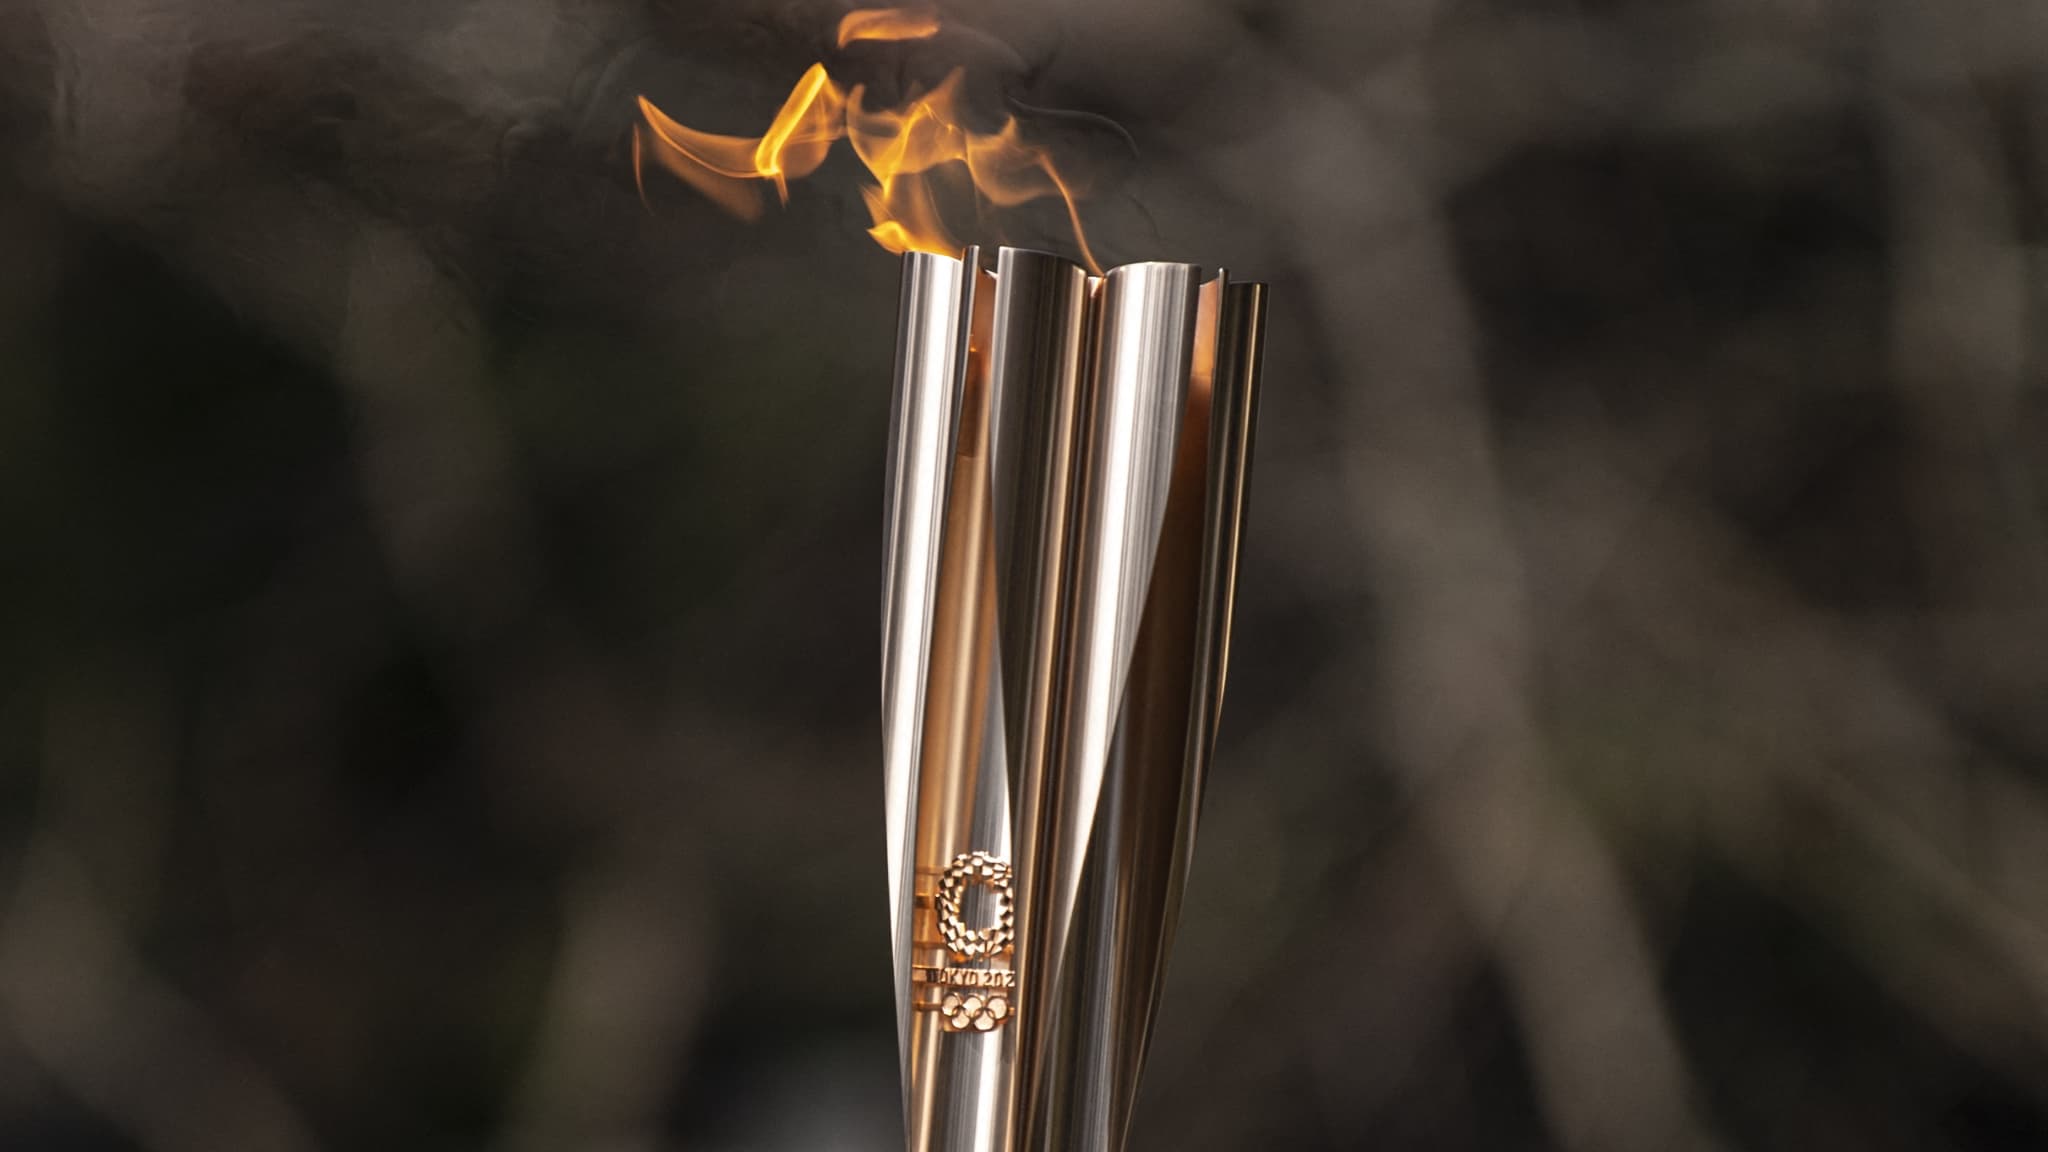 La flamme olympique passera par Aulnay-sous-Bois en 2024 - Aulnaylibre !